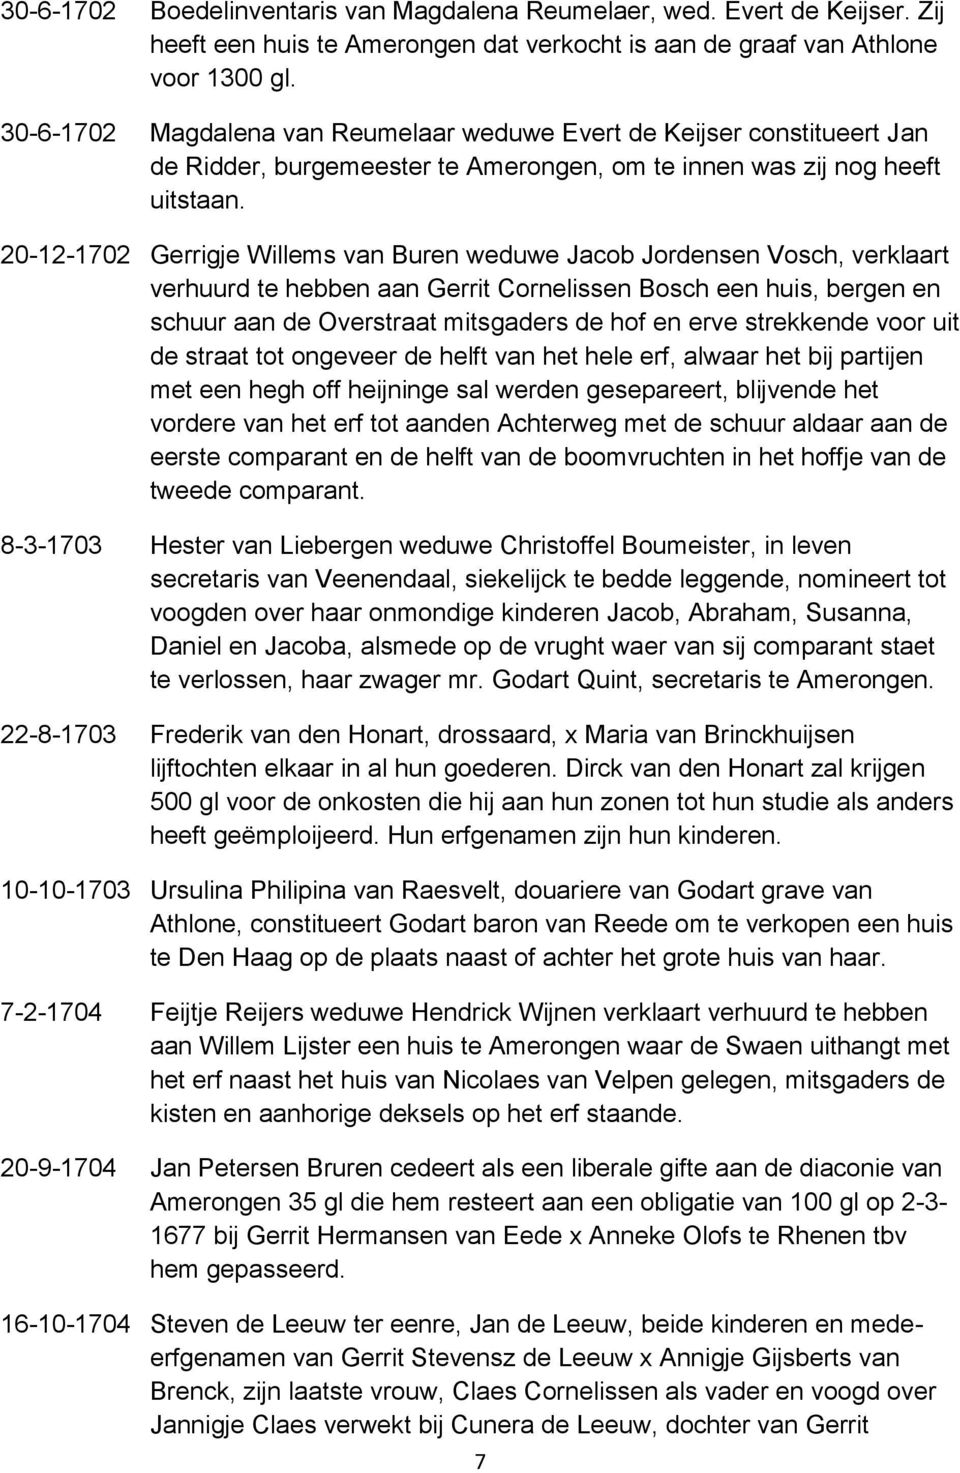 20-12-1702 Gerrigje Willems van Buren weduwe Jacob Jordensen Vosch, verklaart verhuurd te hebben aan Gerrit Cornelissen Bosch een huis, bergen en schuur aan de Overstraat mitsgaders de hof en erve